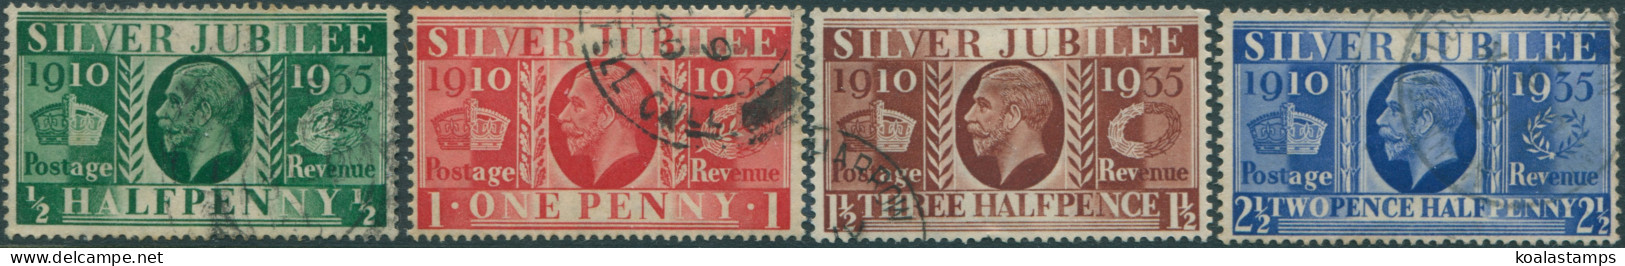 Great Britain 1935 SG453-456 KGV Silver Jubilee Set FU - Non Classificati